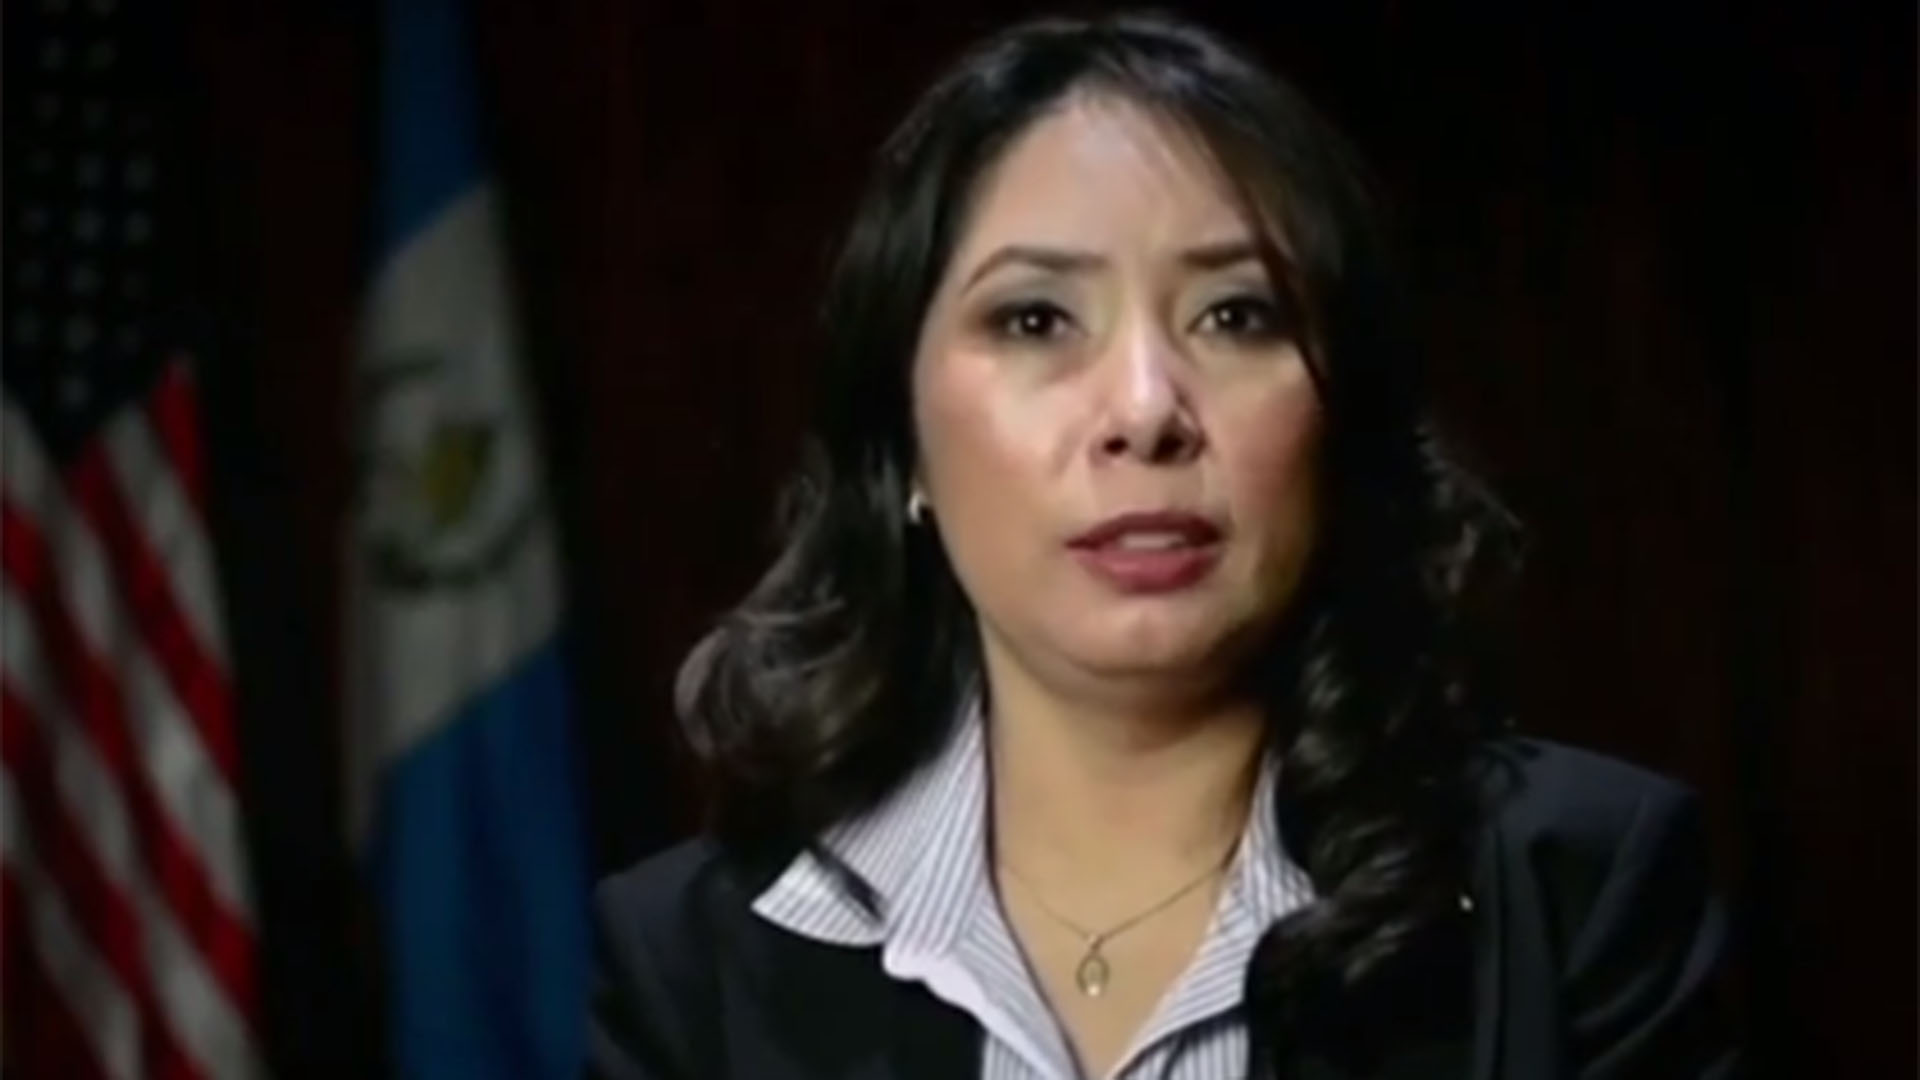 Erika Aifán, jueza de alto riesgo de su país, ha sido reconocida por Washington como una defensora del Estado de Derecho. El Ministerio Público de Guatemala, sin embargo, la ha sometido a persecución y acoso.